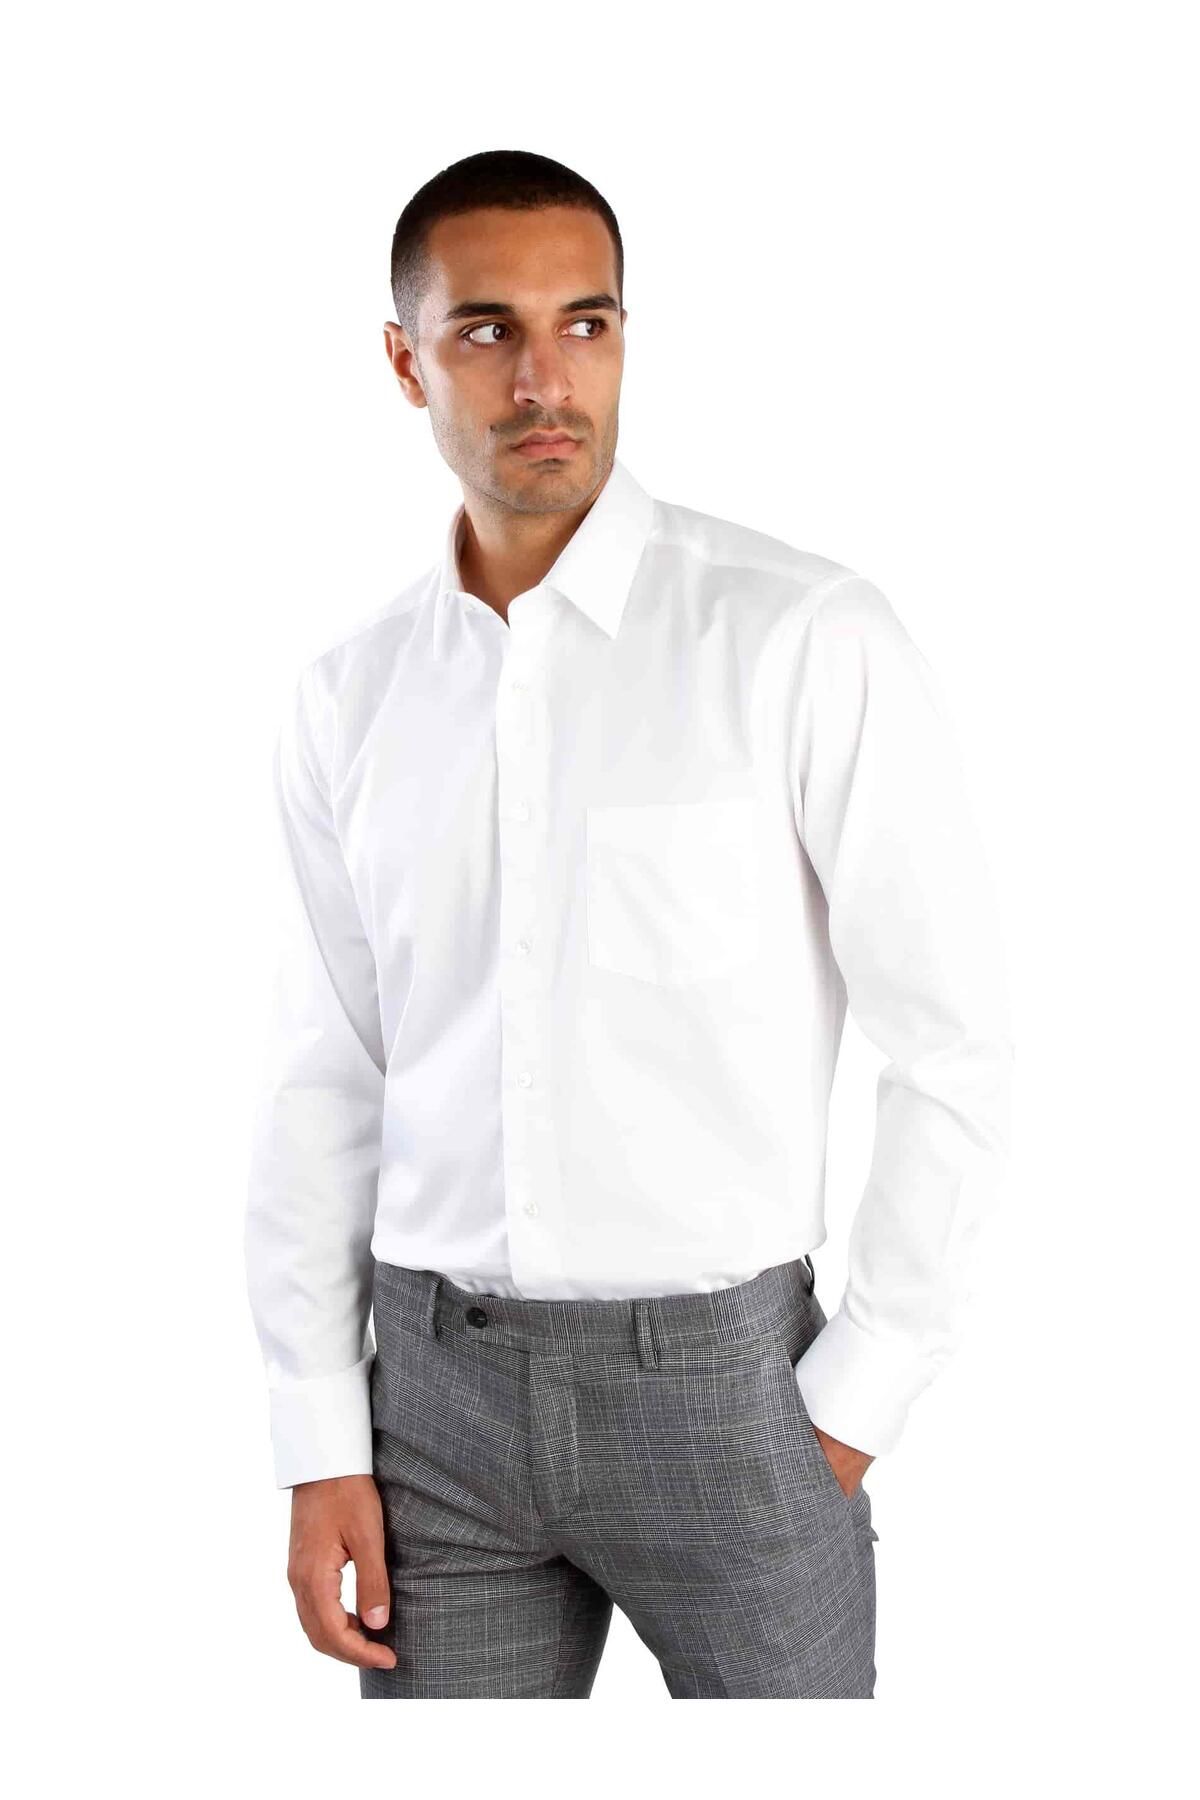 Dufy Beyaz Erkek Büyük Beden Düz Brent Yaka Uzun Kol Gömlek - 52665